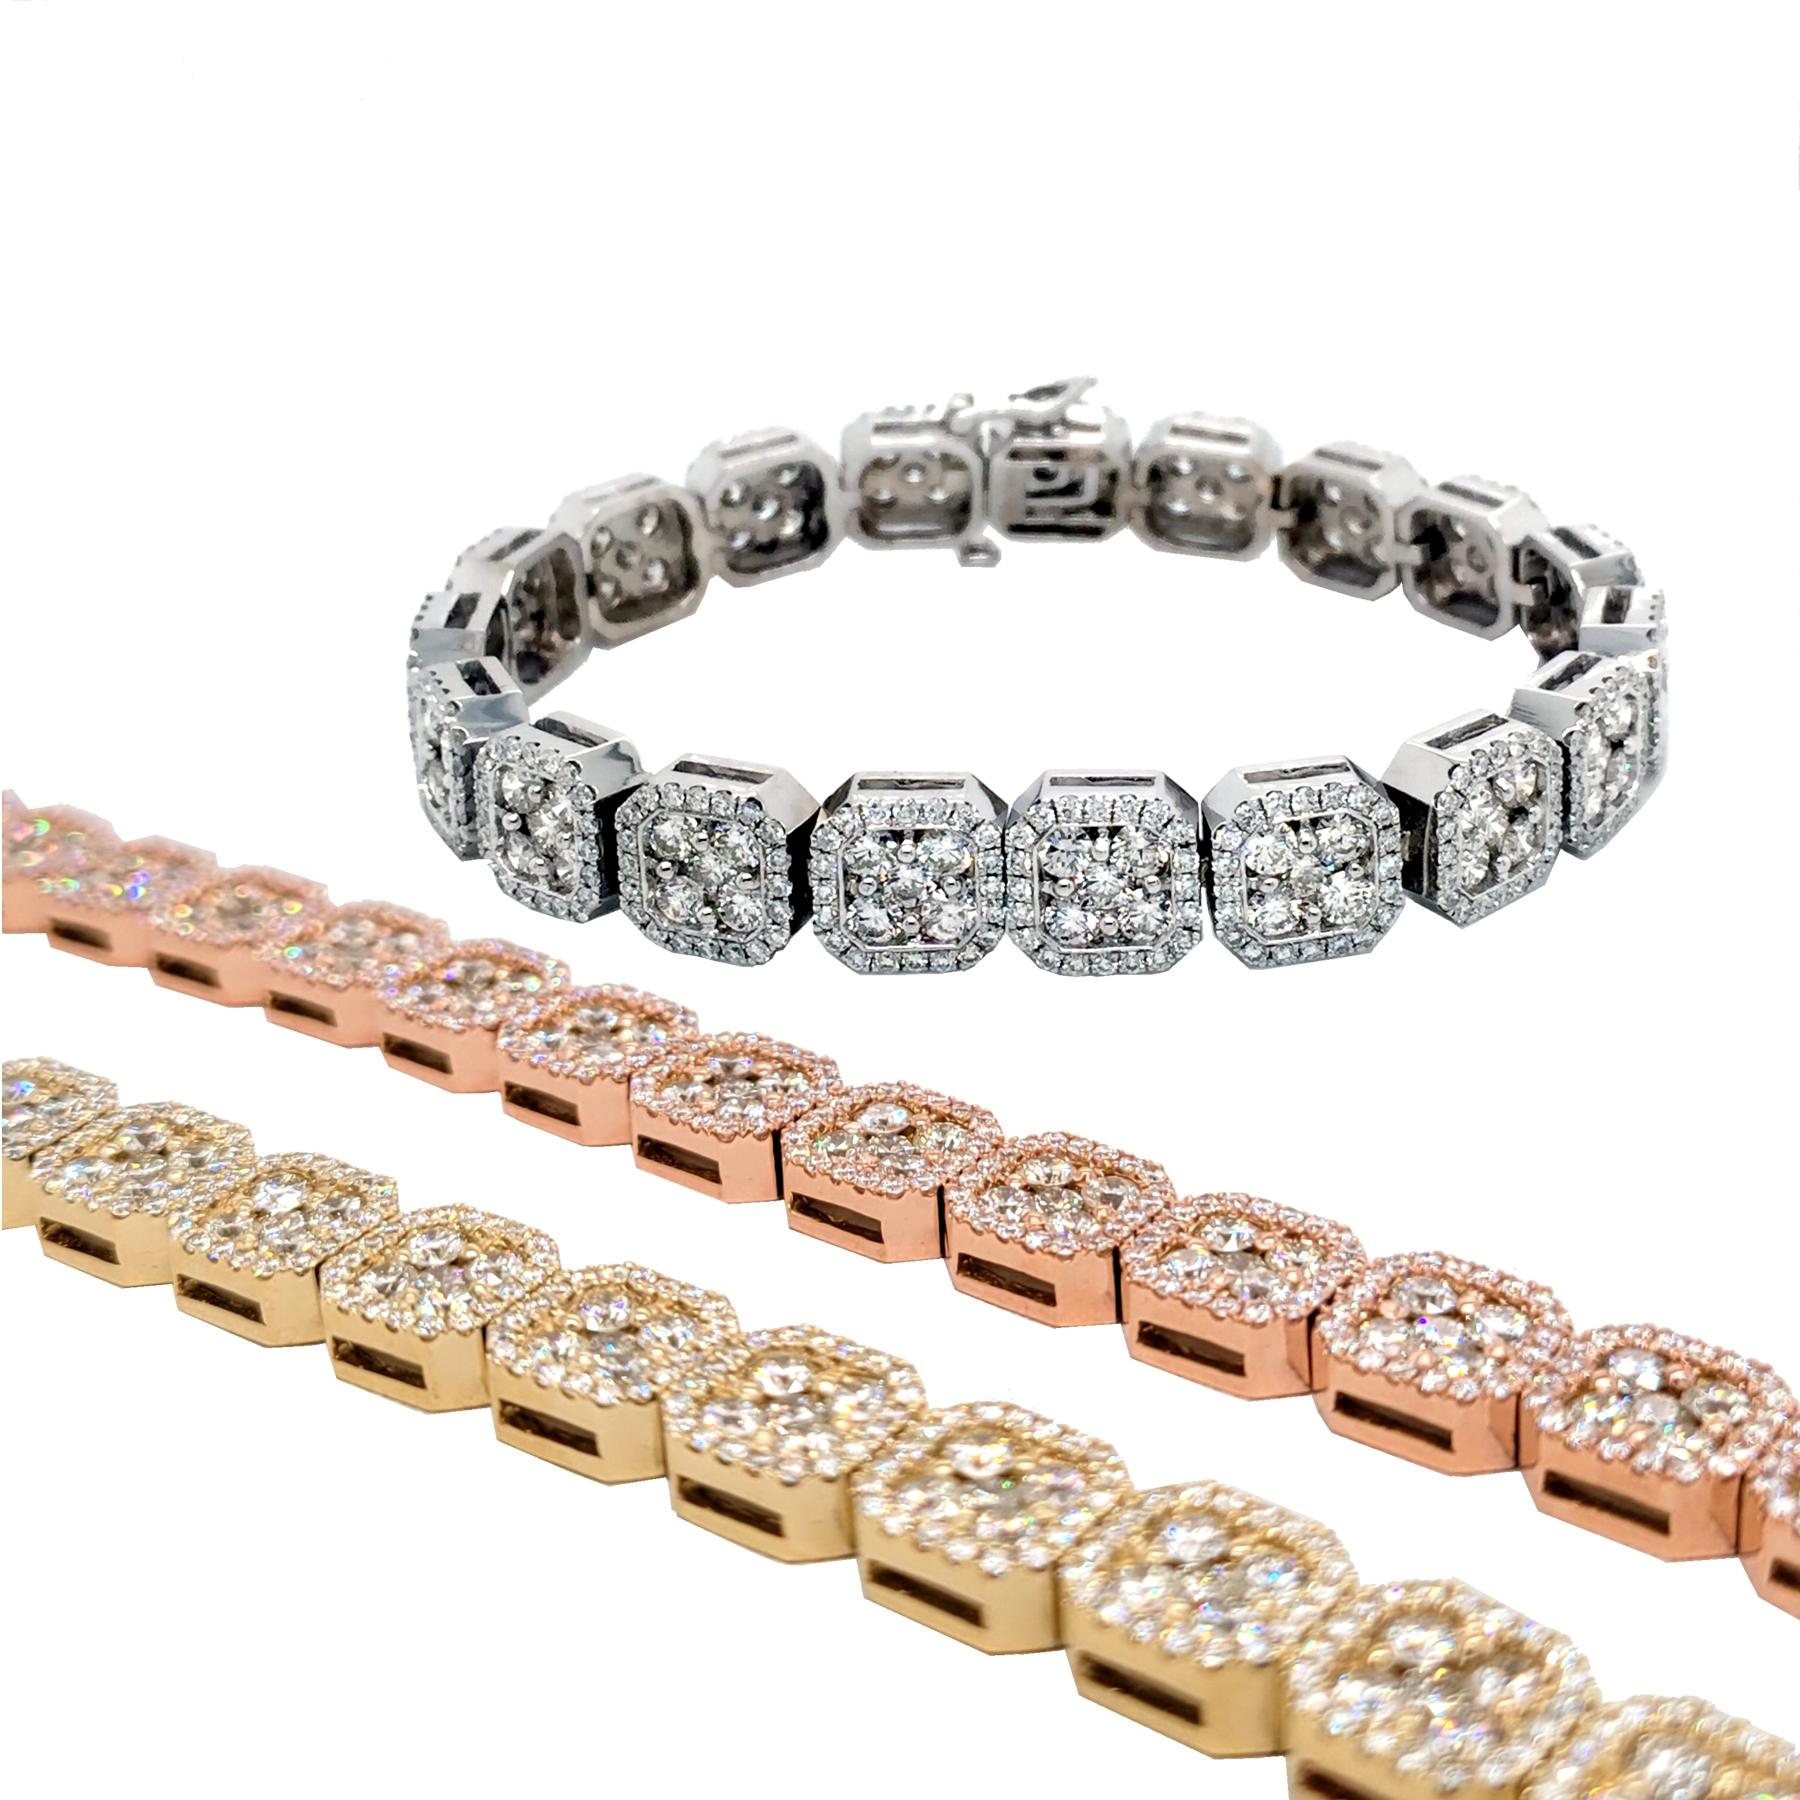 10.65 Carat Pave Set 14K Gold Diamond Tennis Bracelet with Cluster Set Links For Sale 1